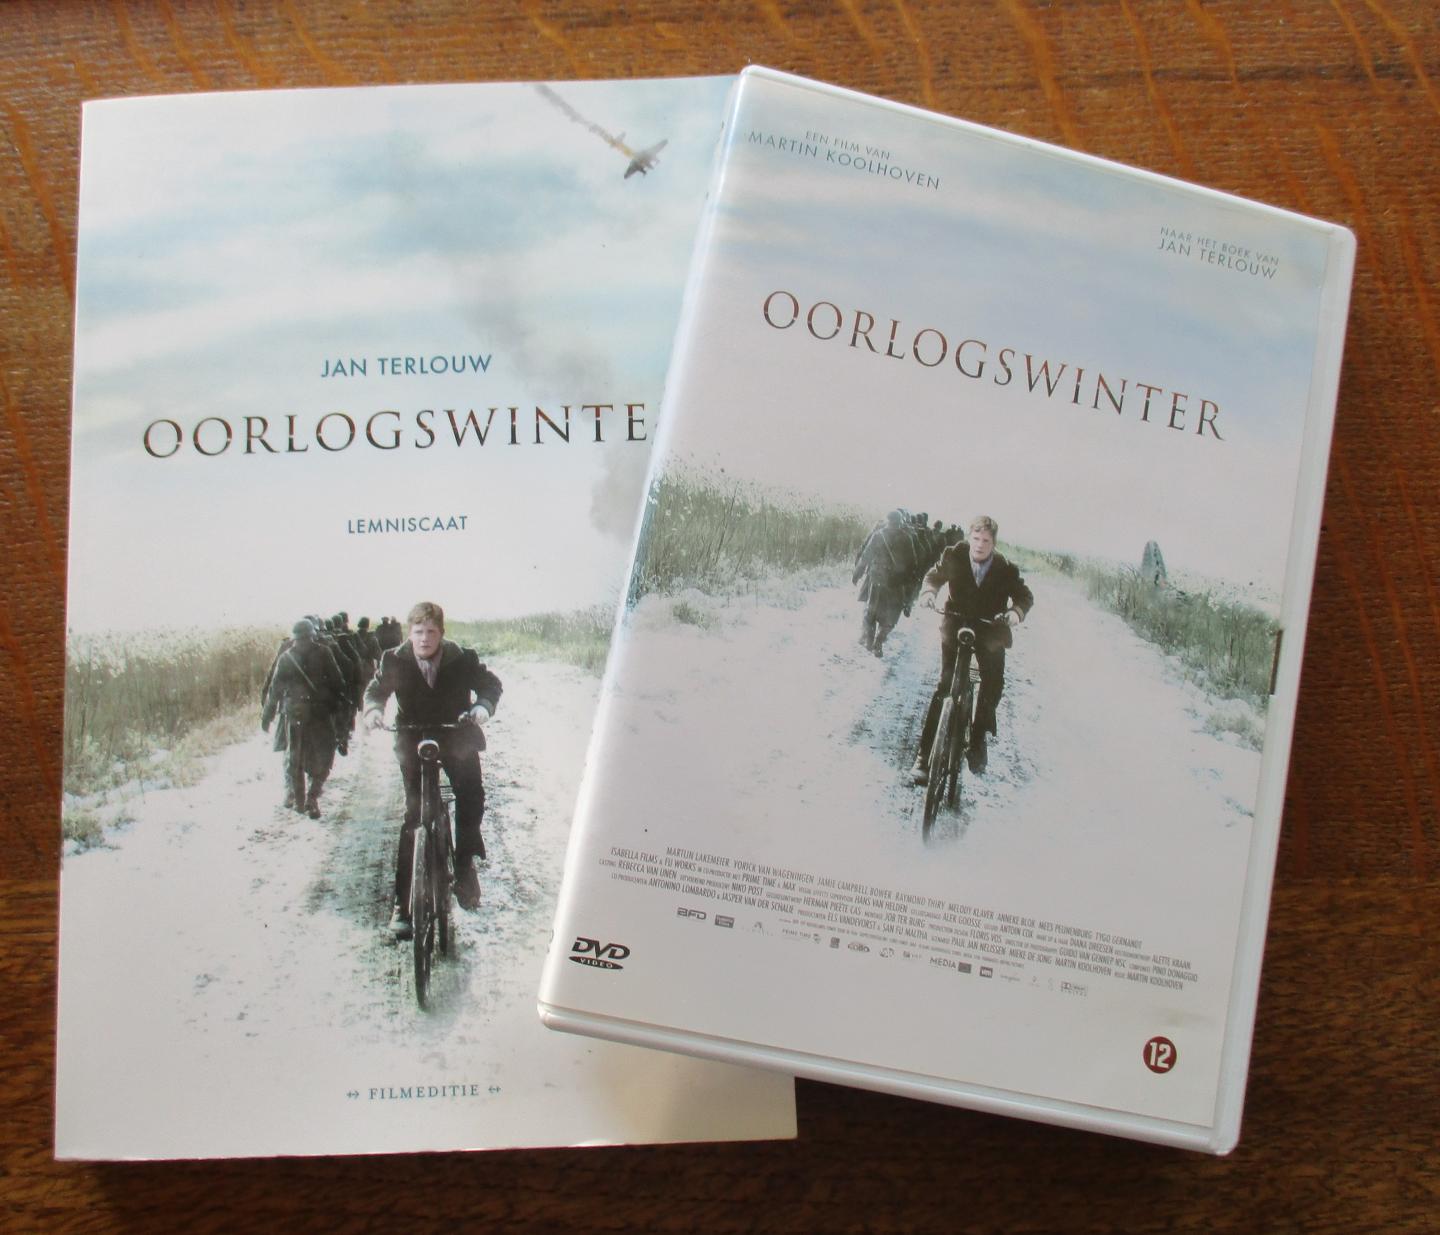 Terlouw, Jan - Oorlogswinter / filmeditie + DVD  in één koop